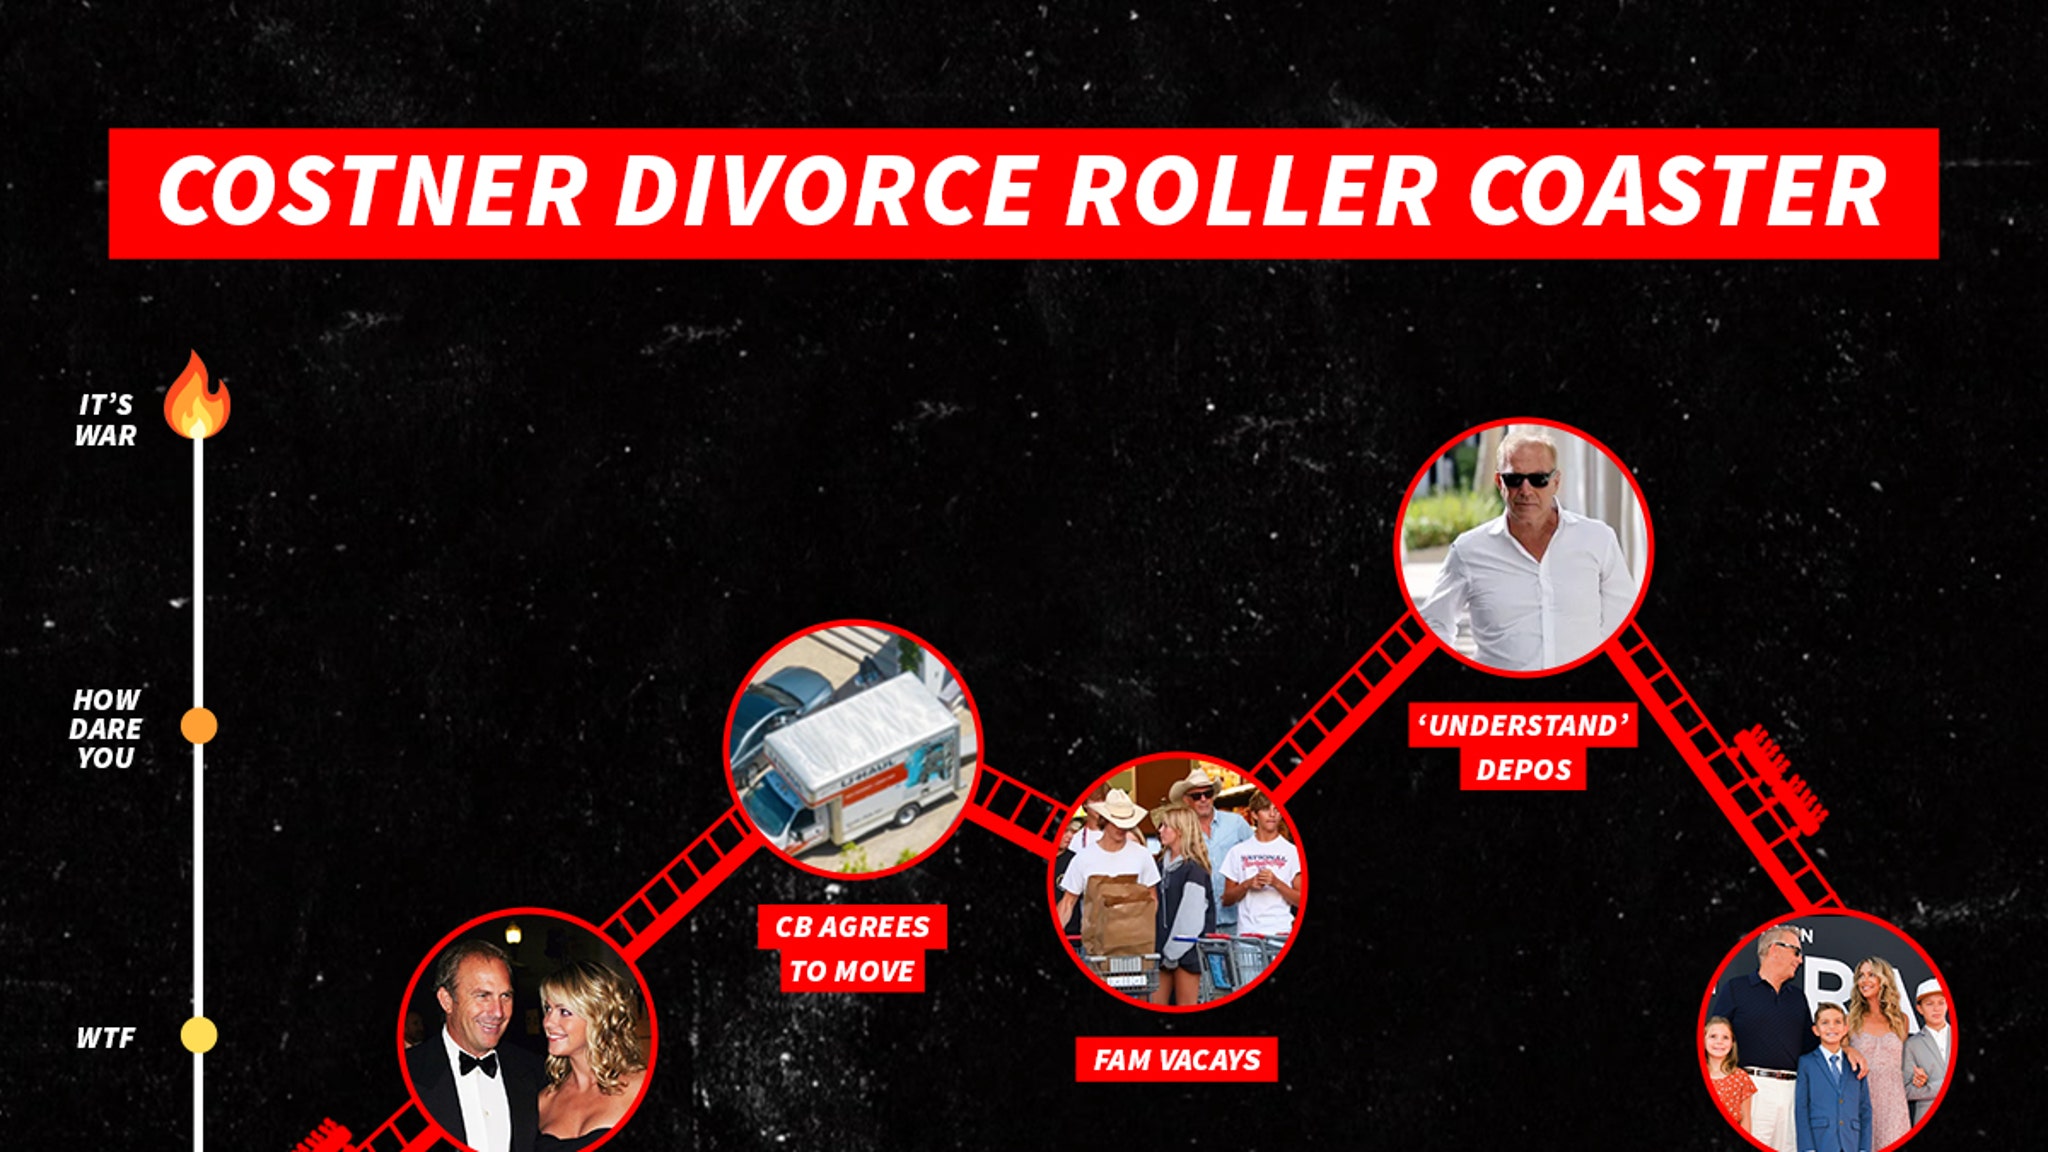 Kevin Costner’s Divorce Timeline a Roller Coaster with an Abrupt Ending